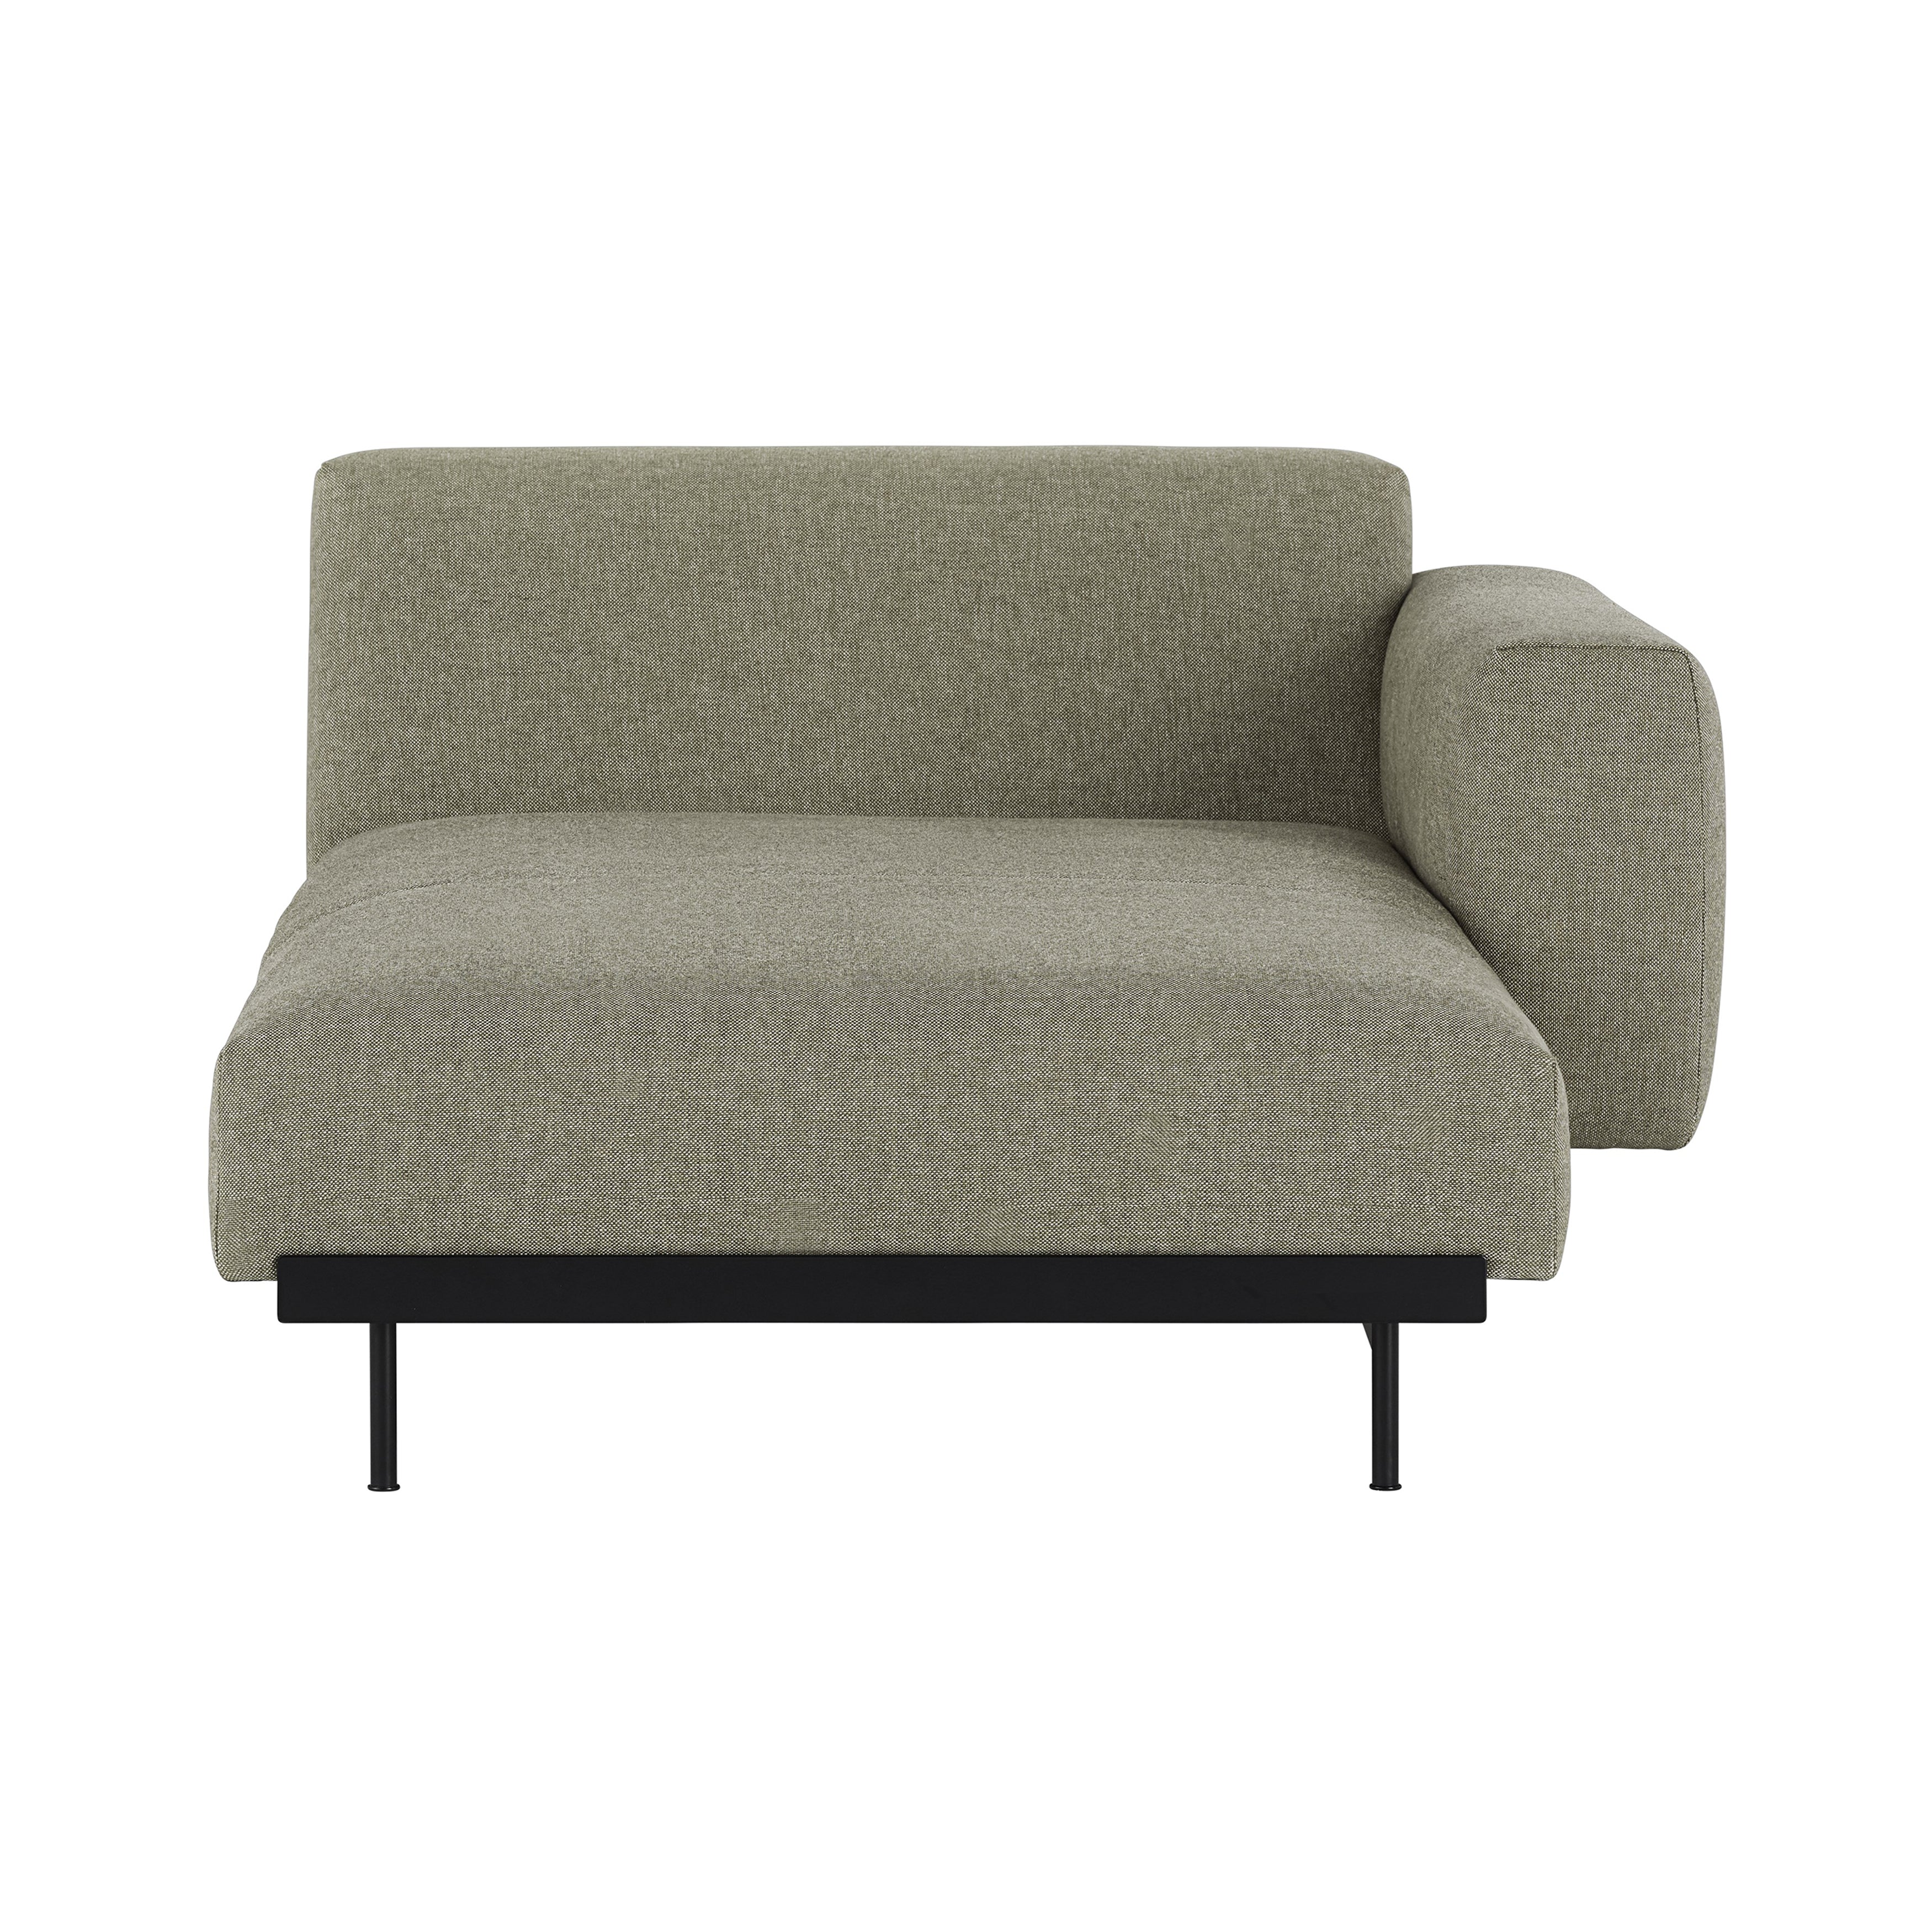 In Situ Modular Sofa: Modules + Right Armrest Lounge